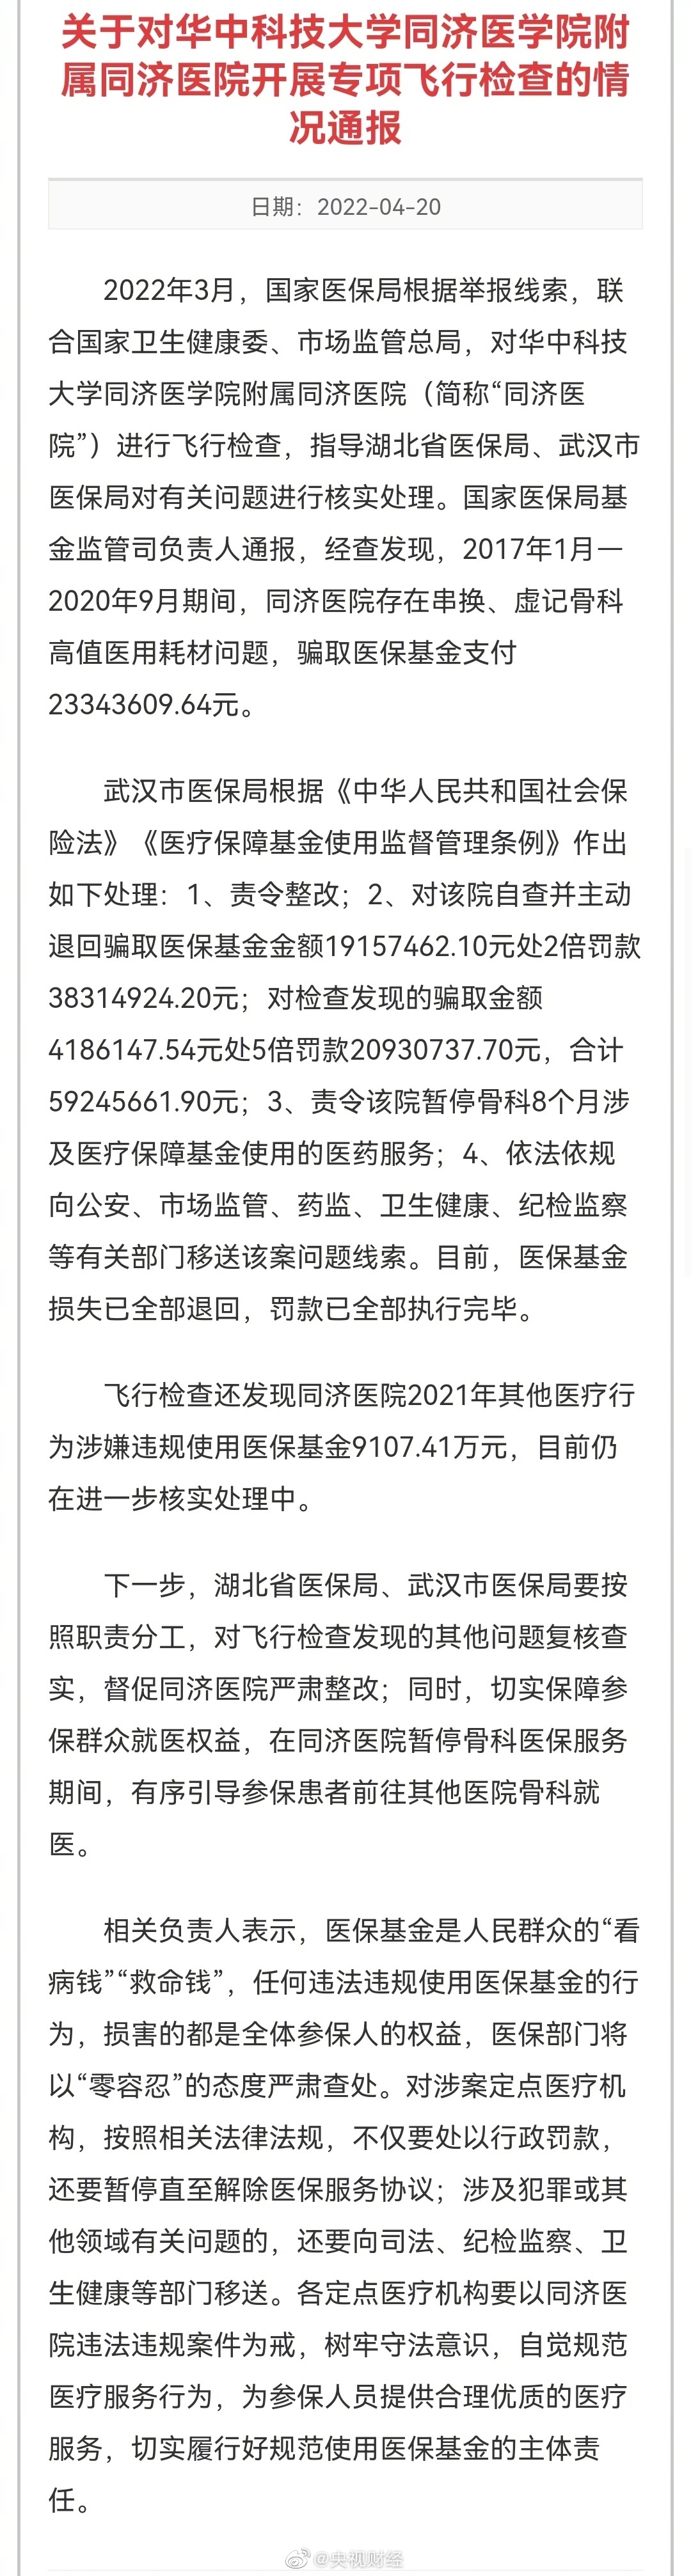 武汉同济医院被曝骗超2300万元医保 武汉同济医院被罚超5